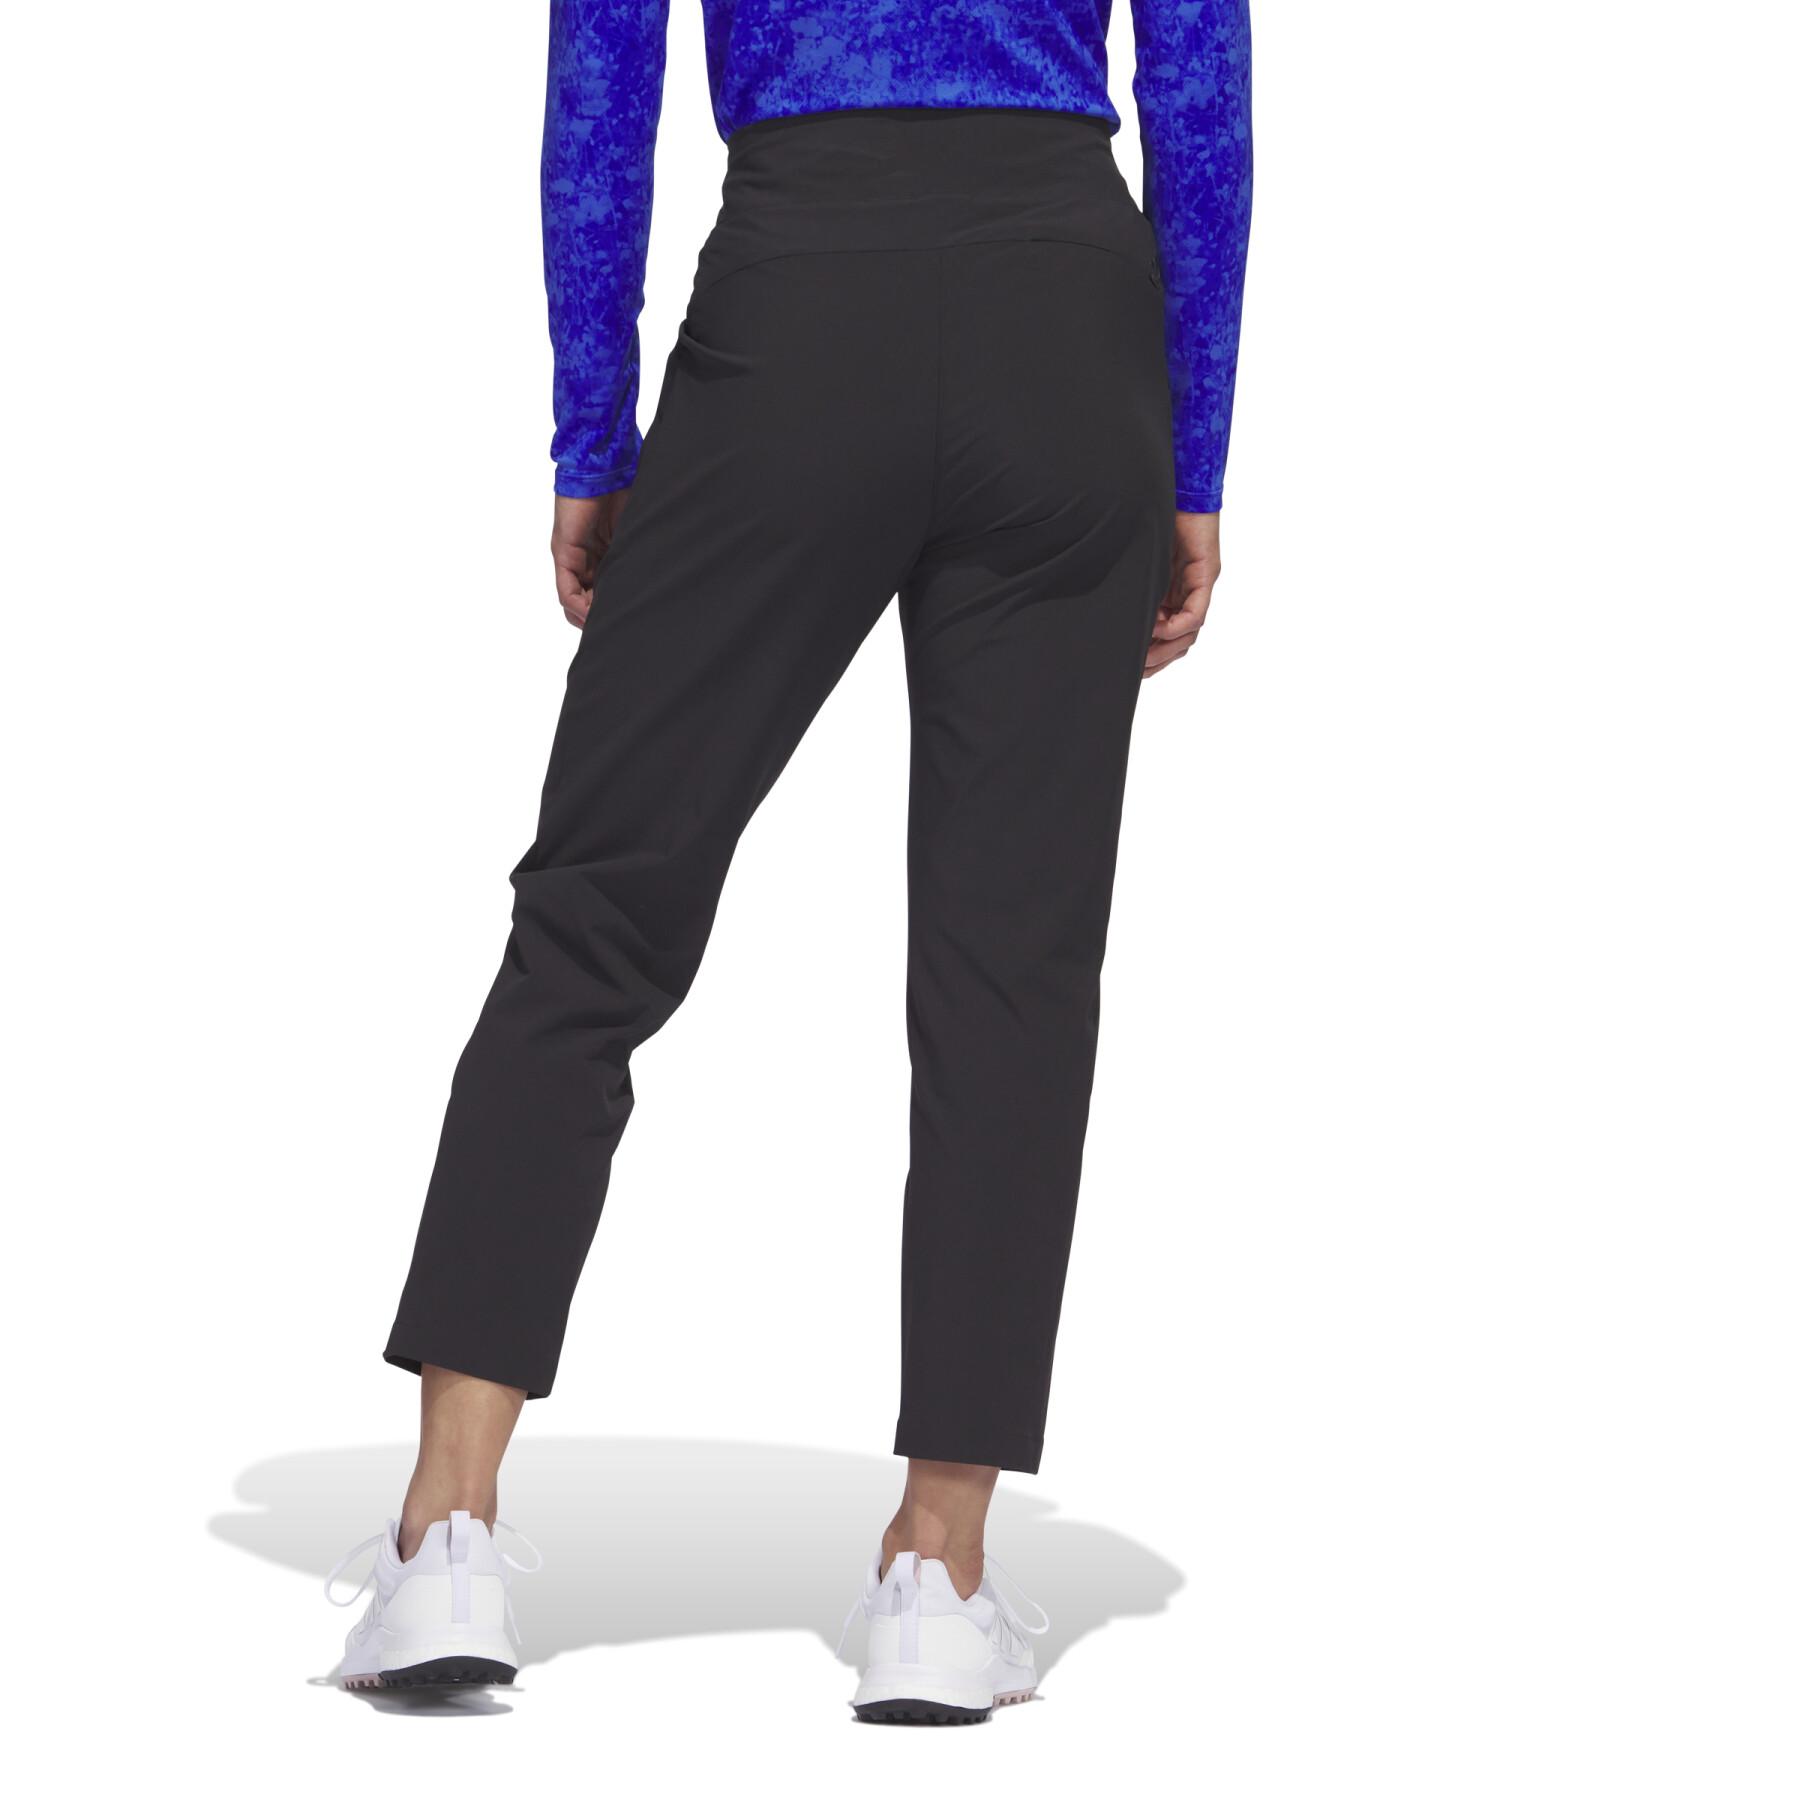 Pantalon à enfiler femme adidas Ultimate365 Tour